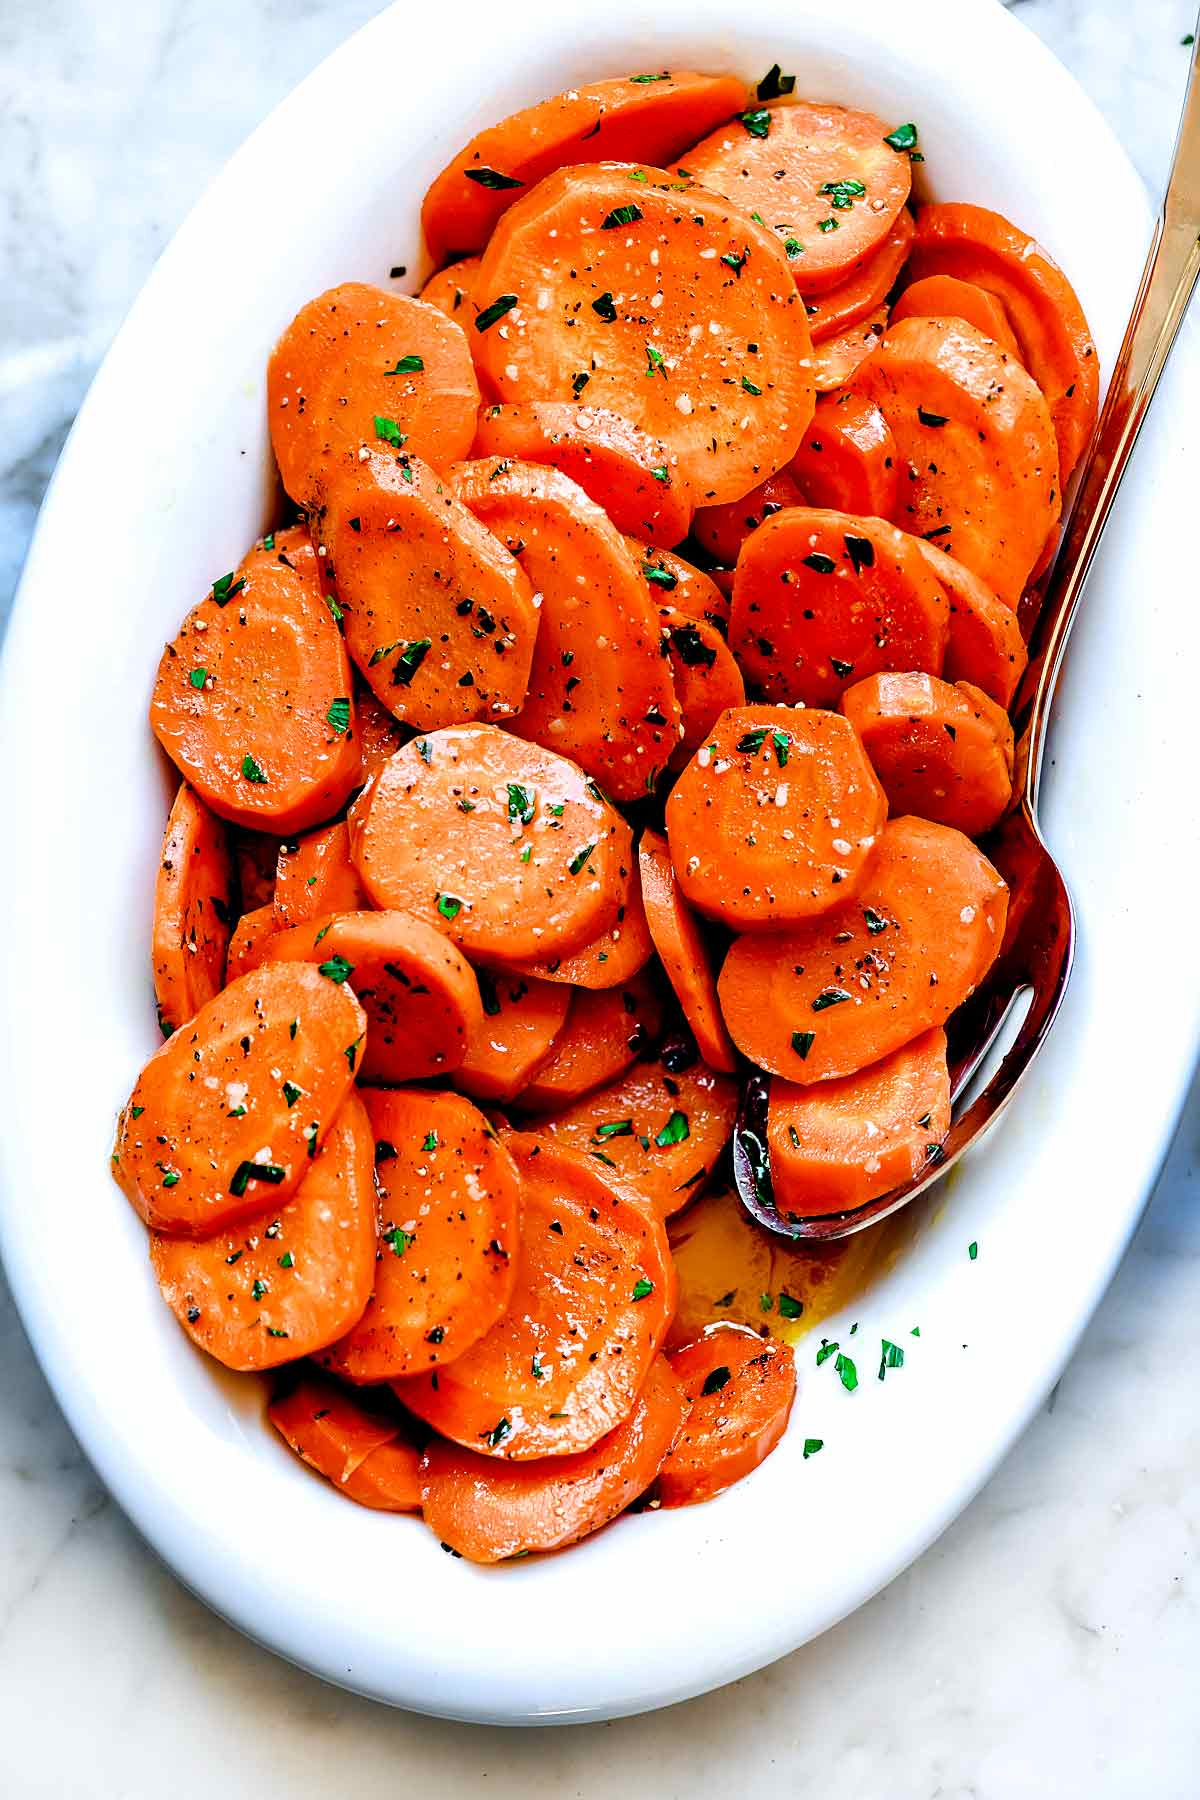 Cenouras vidradas foodiecrush.com #carrots #carrots #sidade #fasy #brownsugar #recipe